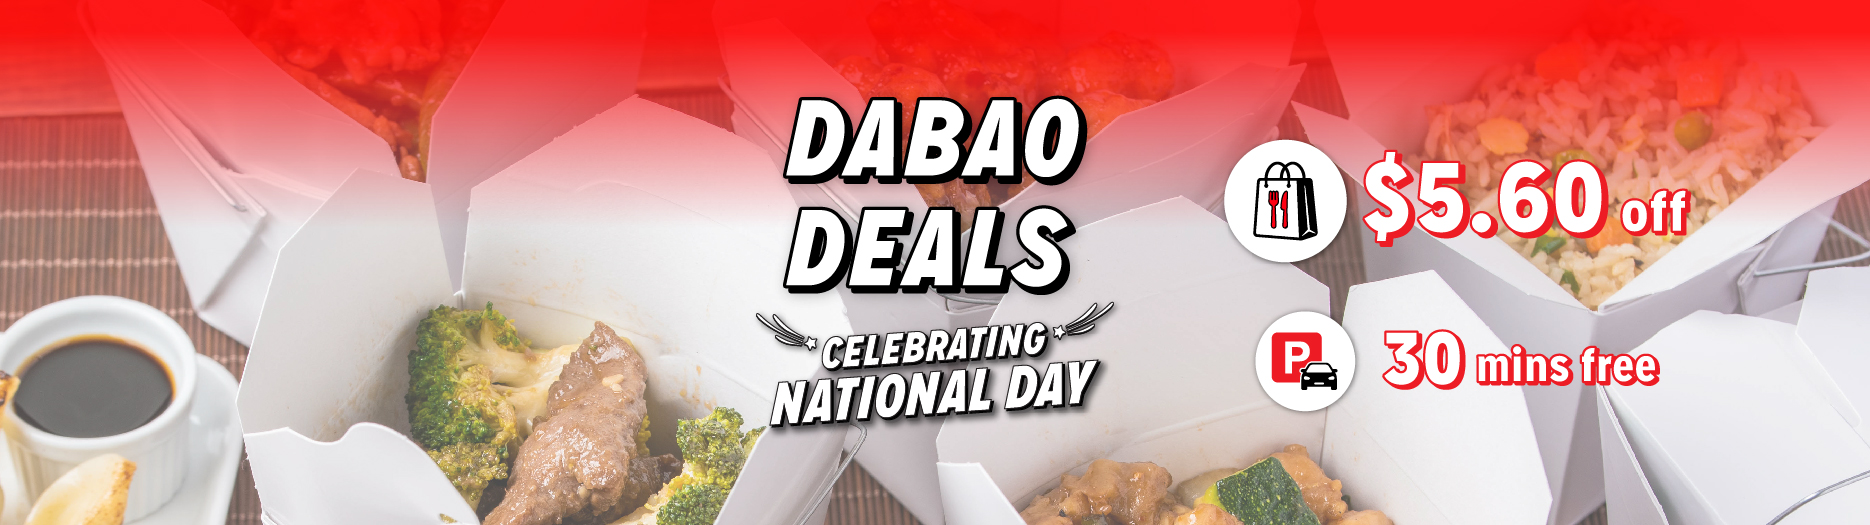 Web-NDP2021(special deals)_1870x525(dabaodeals)